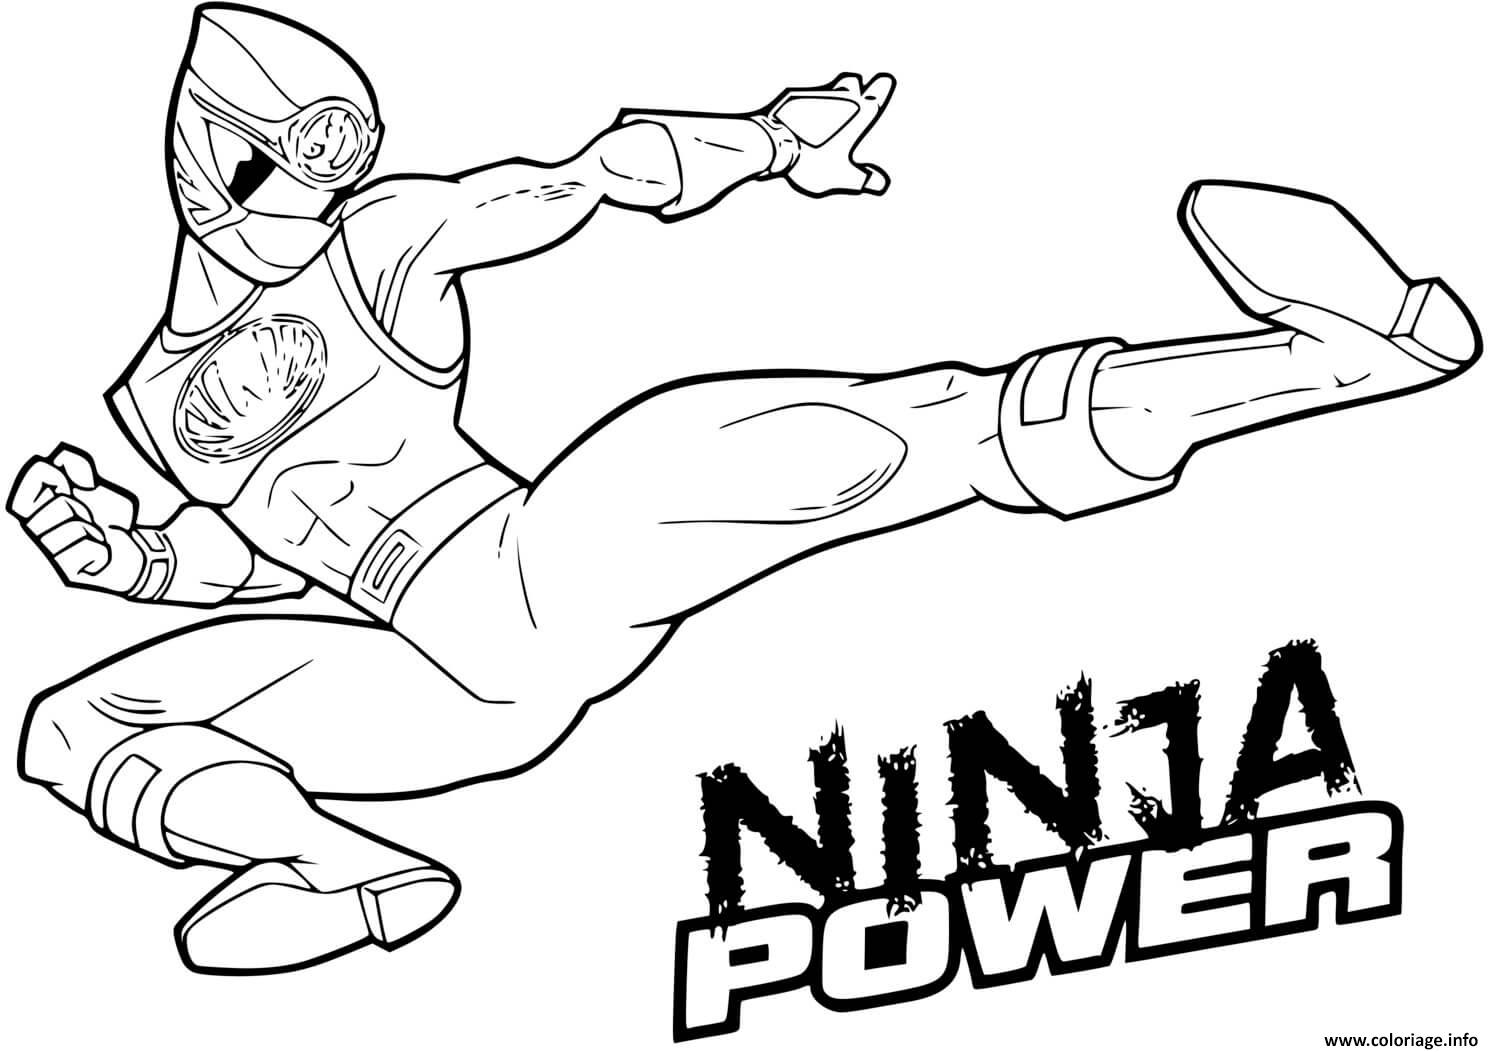 Dessin ninja power rangers en mode attaque Coloriage Gratuit à Imprimer